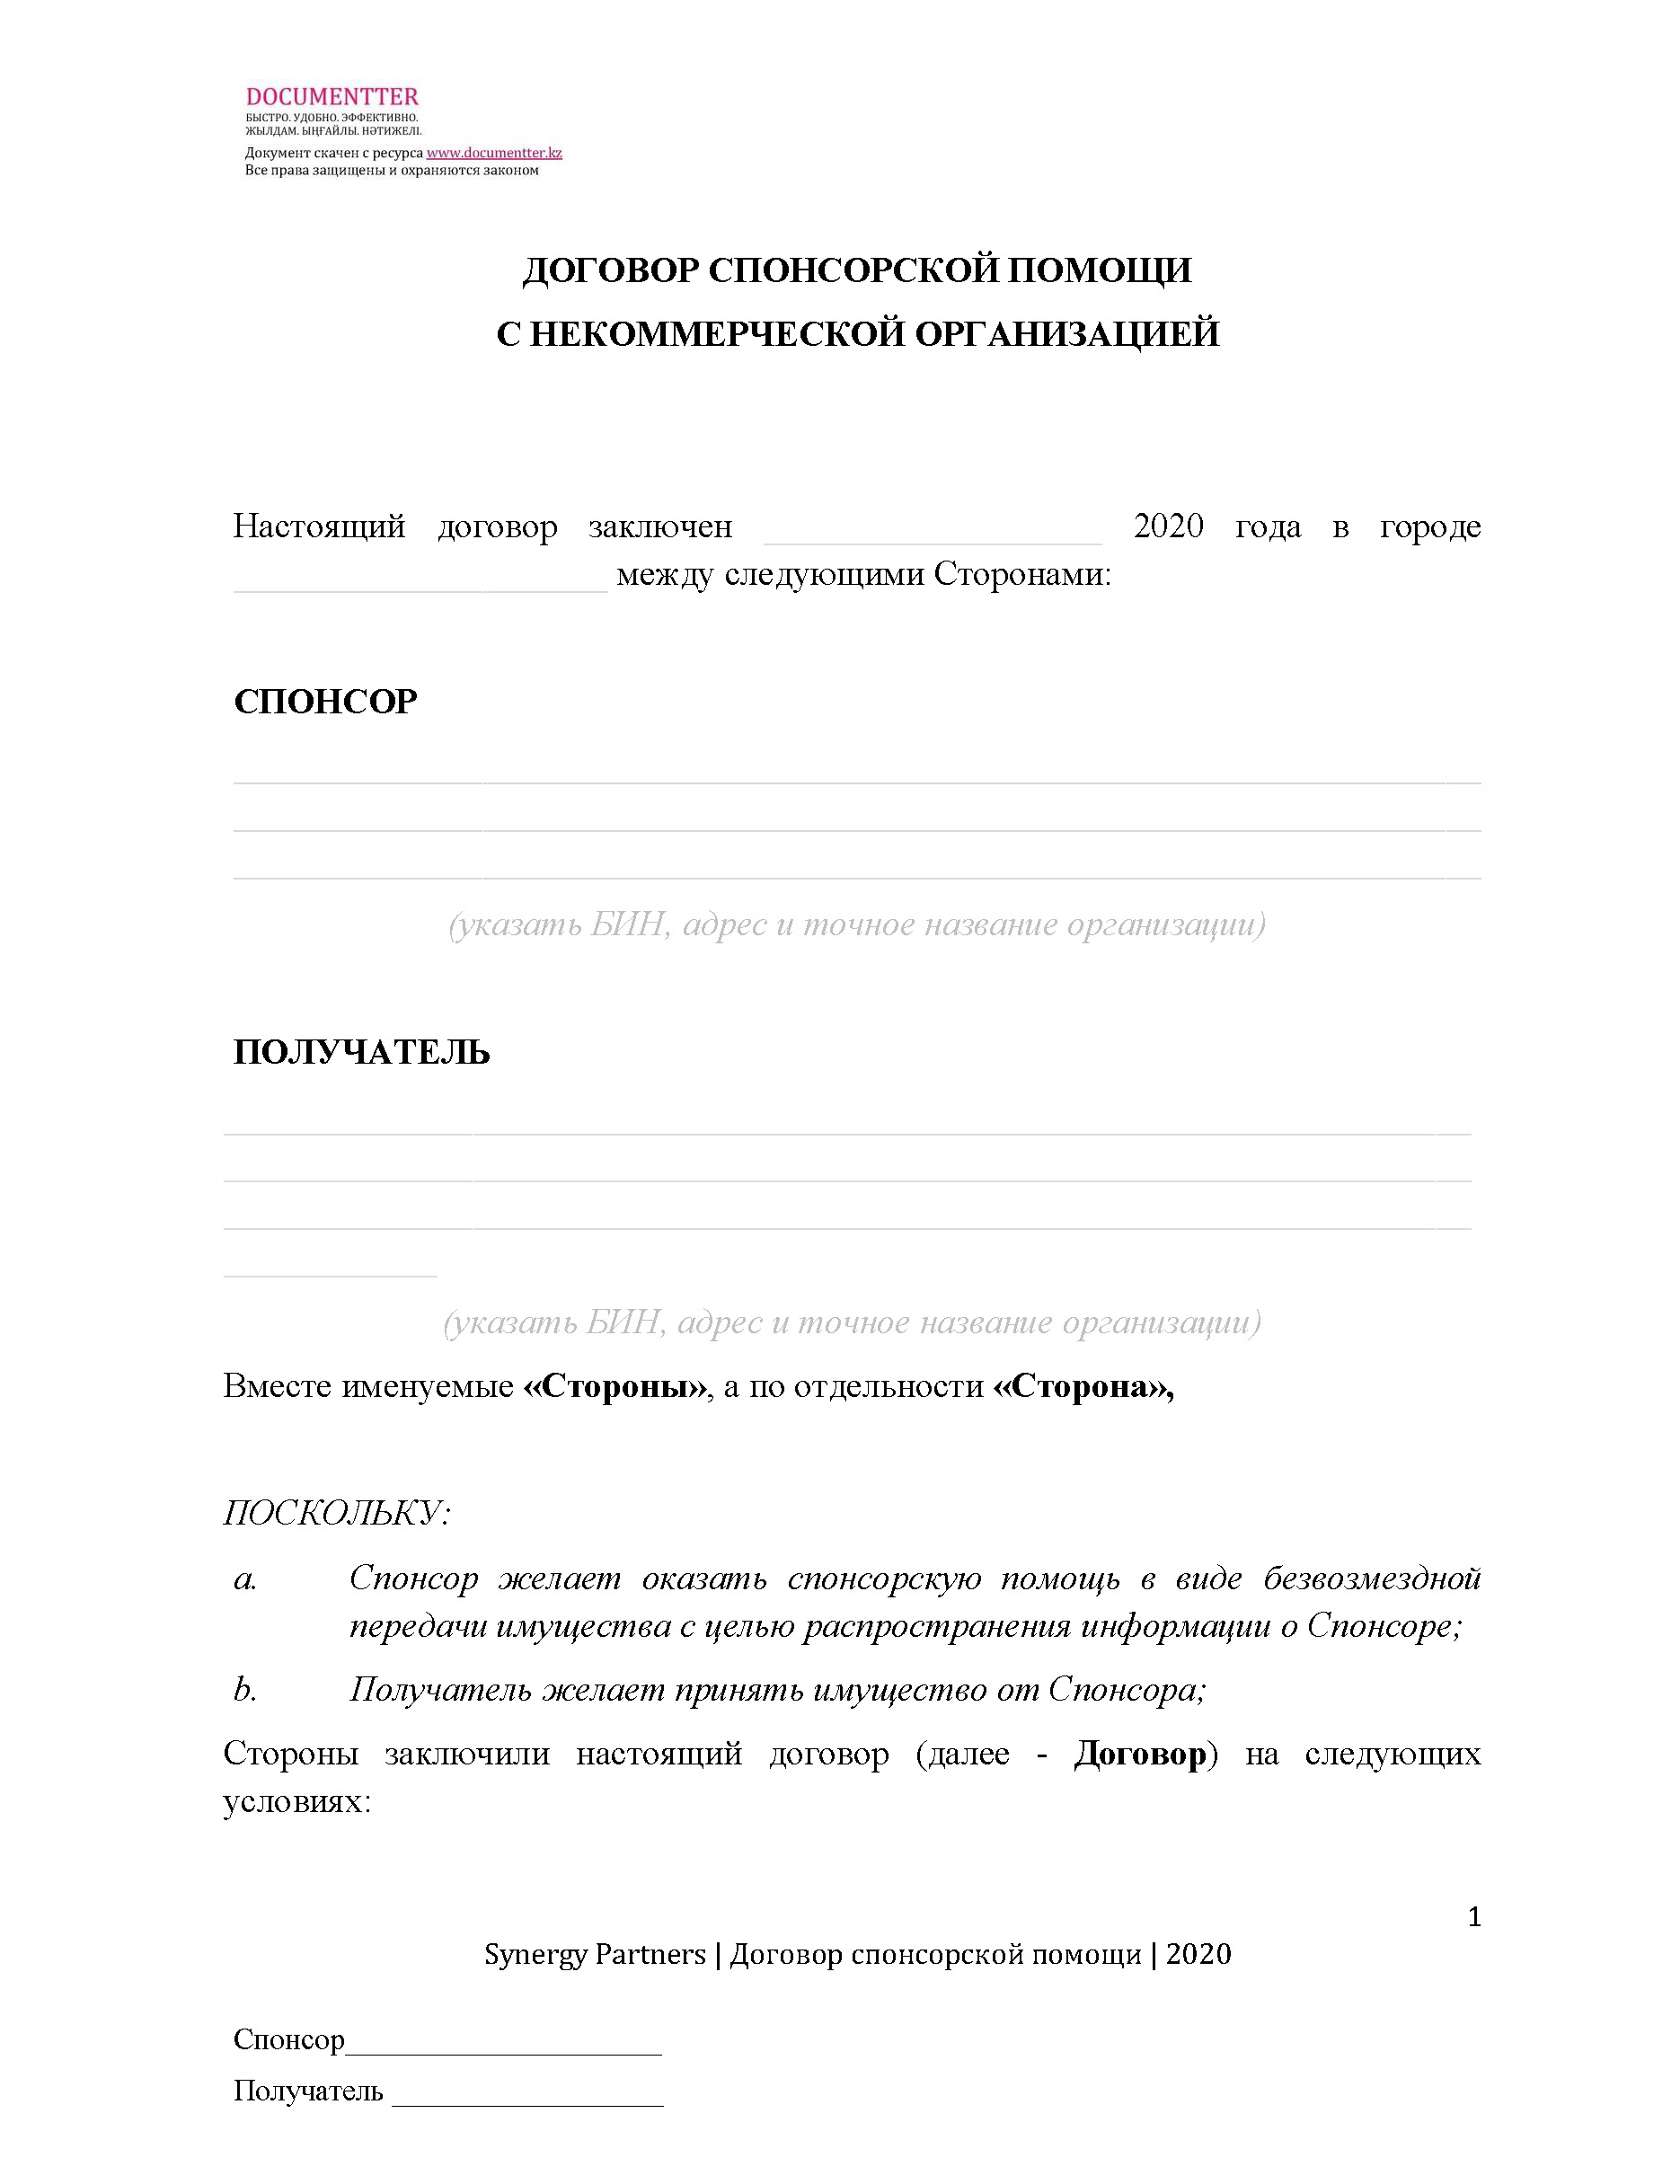 Договор спонсорской помощи, когда ТОО дает спонсорскую помощь некоммерческой организации | documentterkz.com в Казахстане